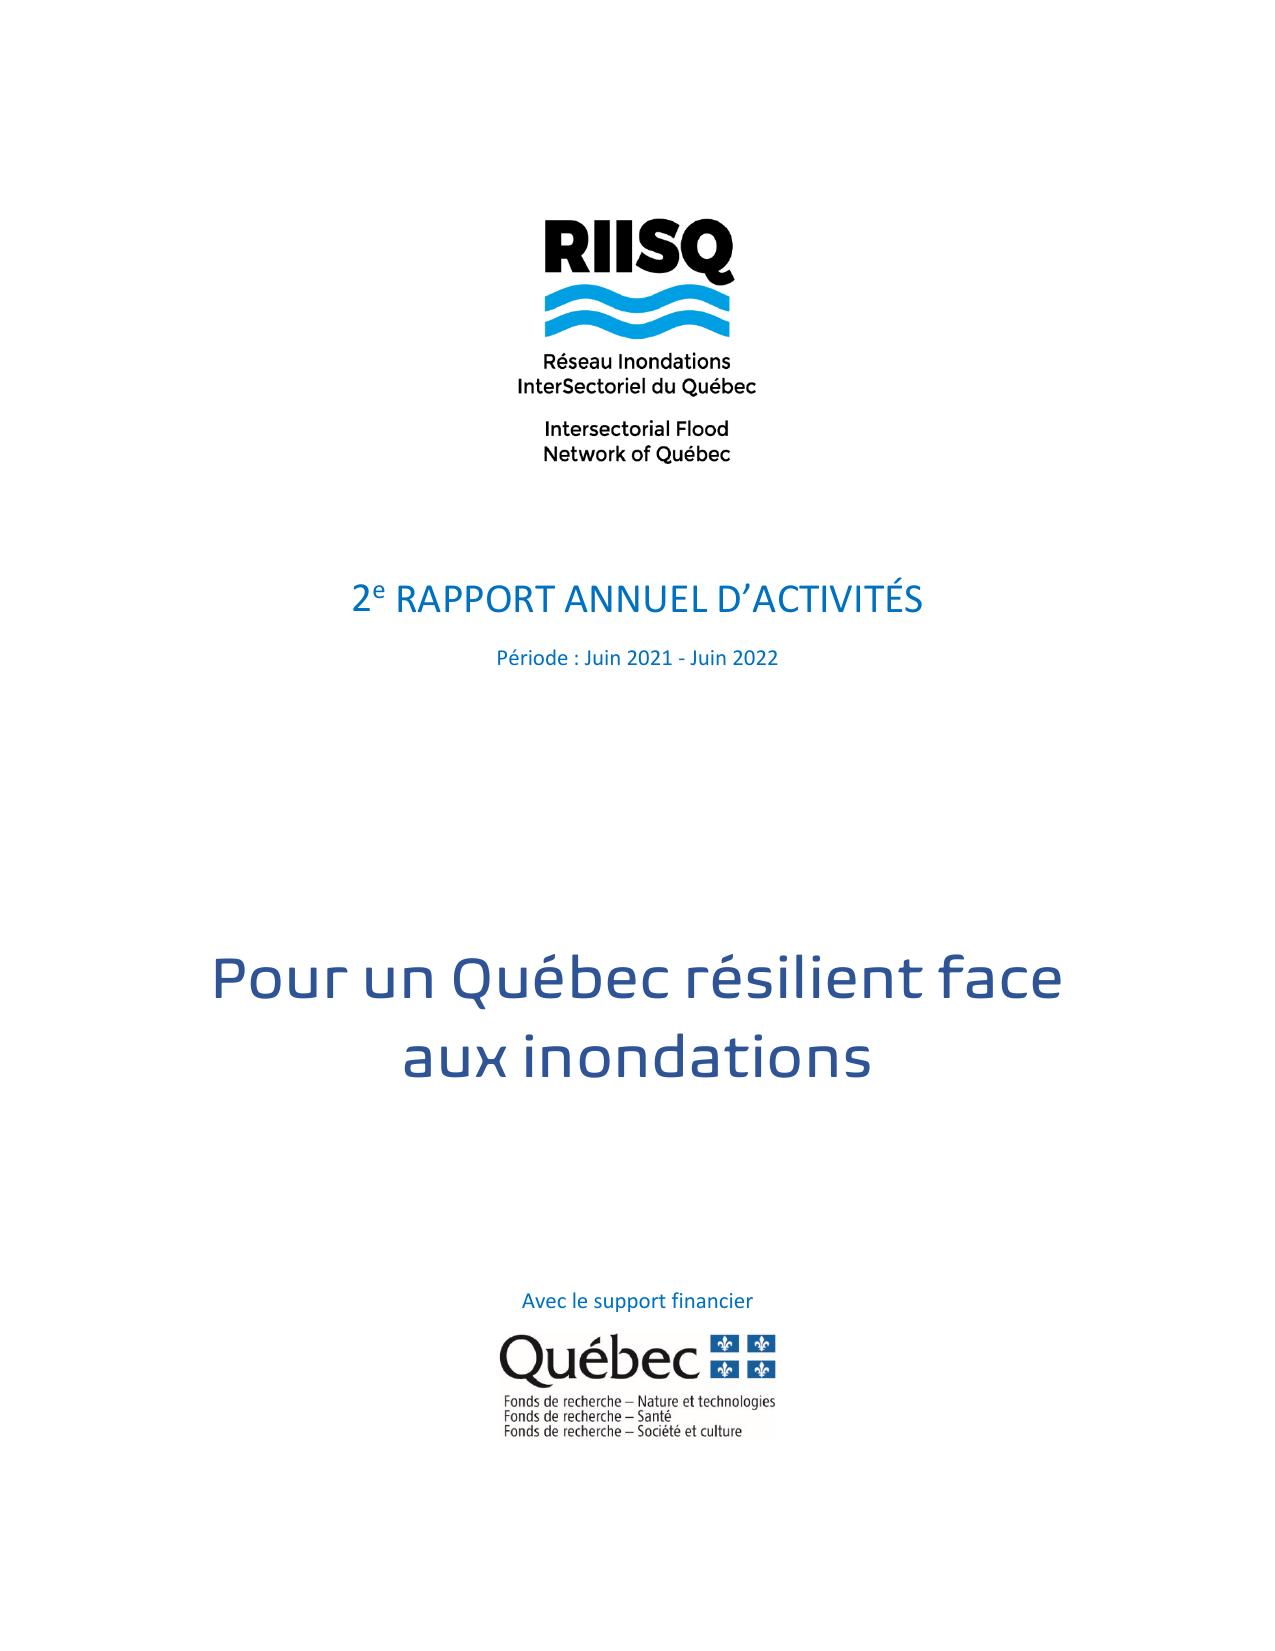 RIISQ 2022 Annual Report